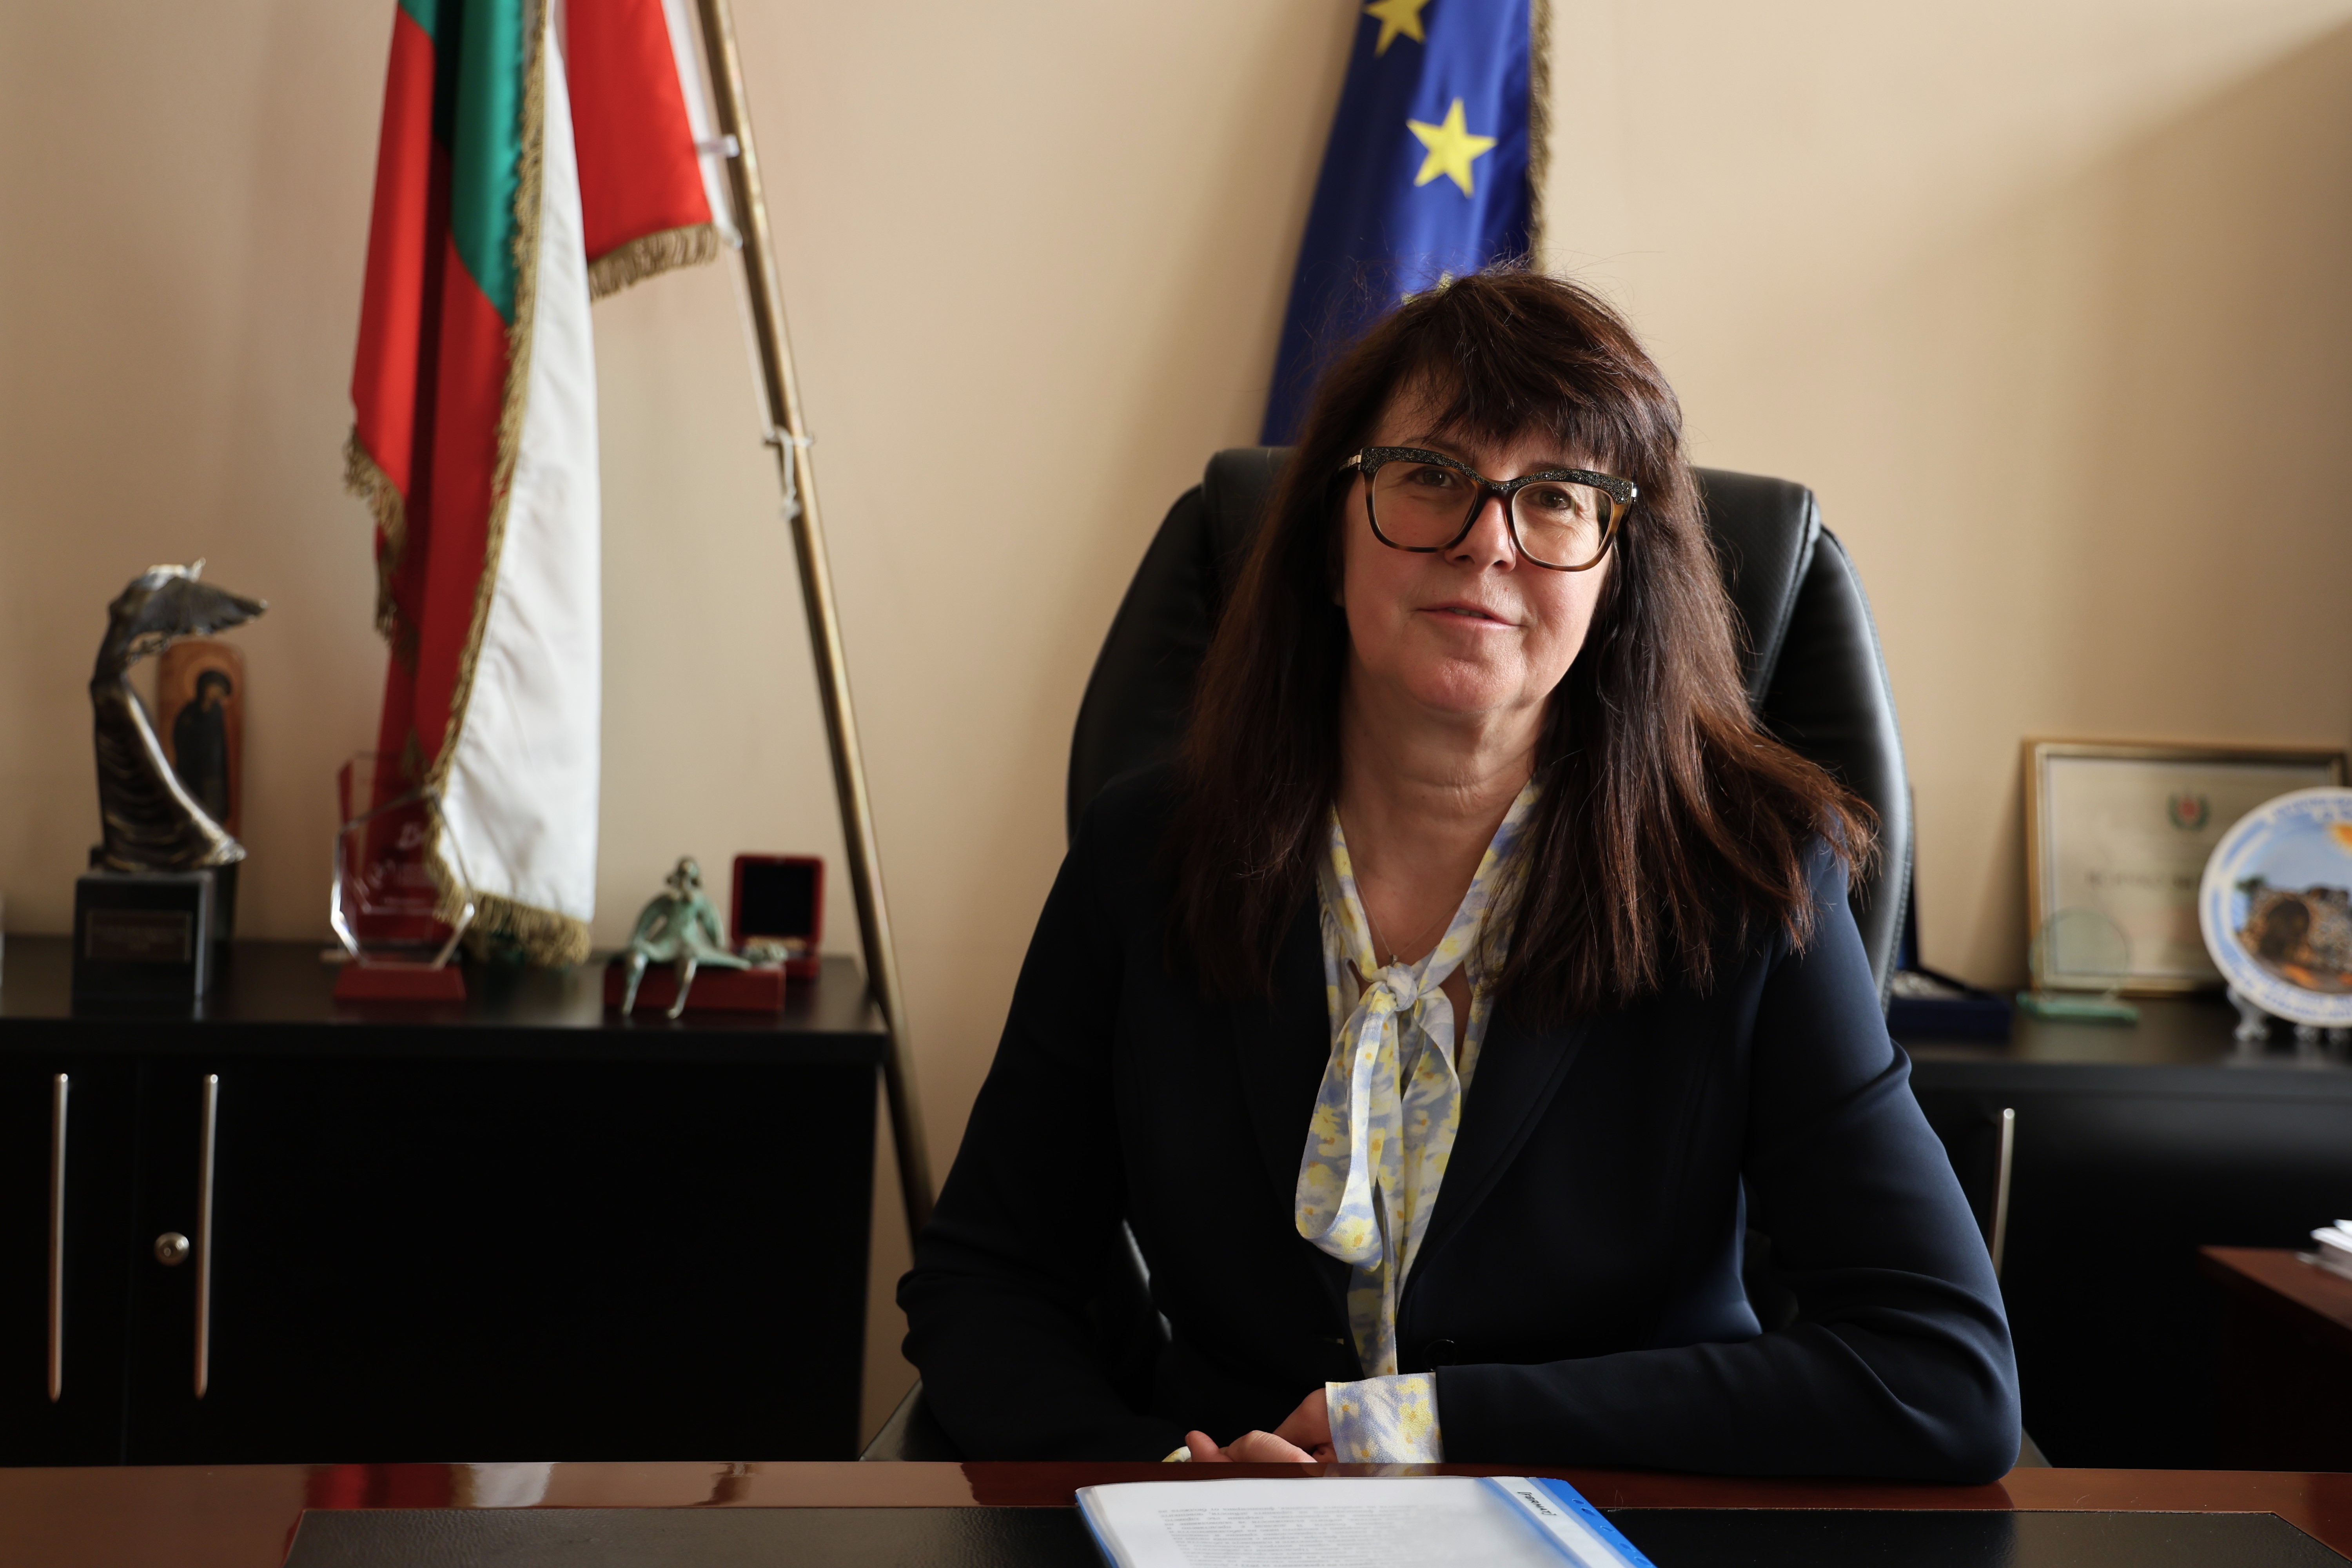 Новият министър на здравеопазването д-р Кондева: Ще търся баланс, но грижата за хората е на първо място